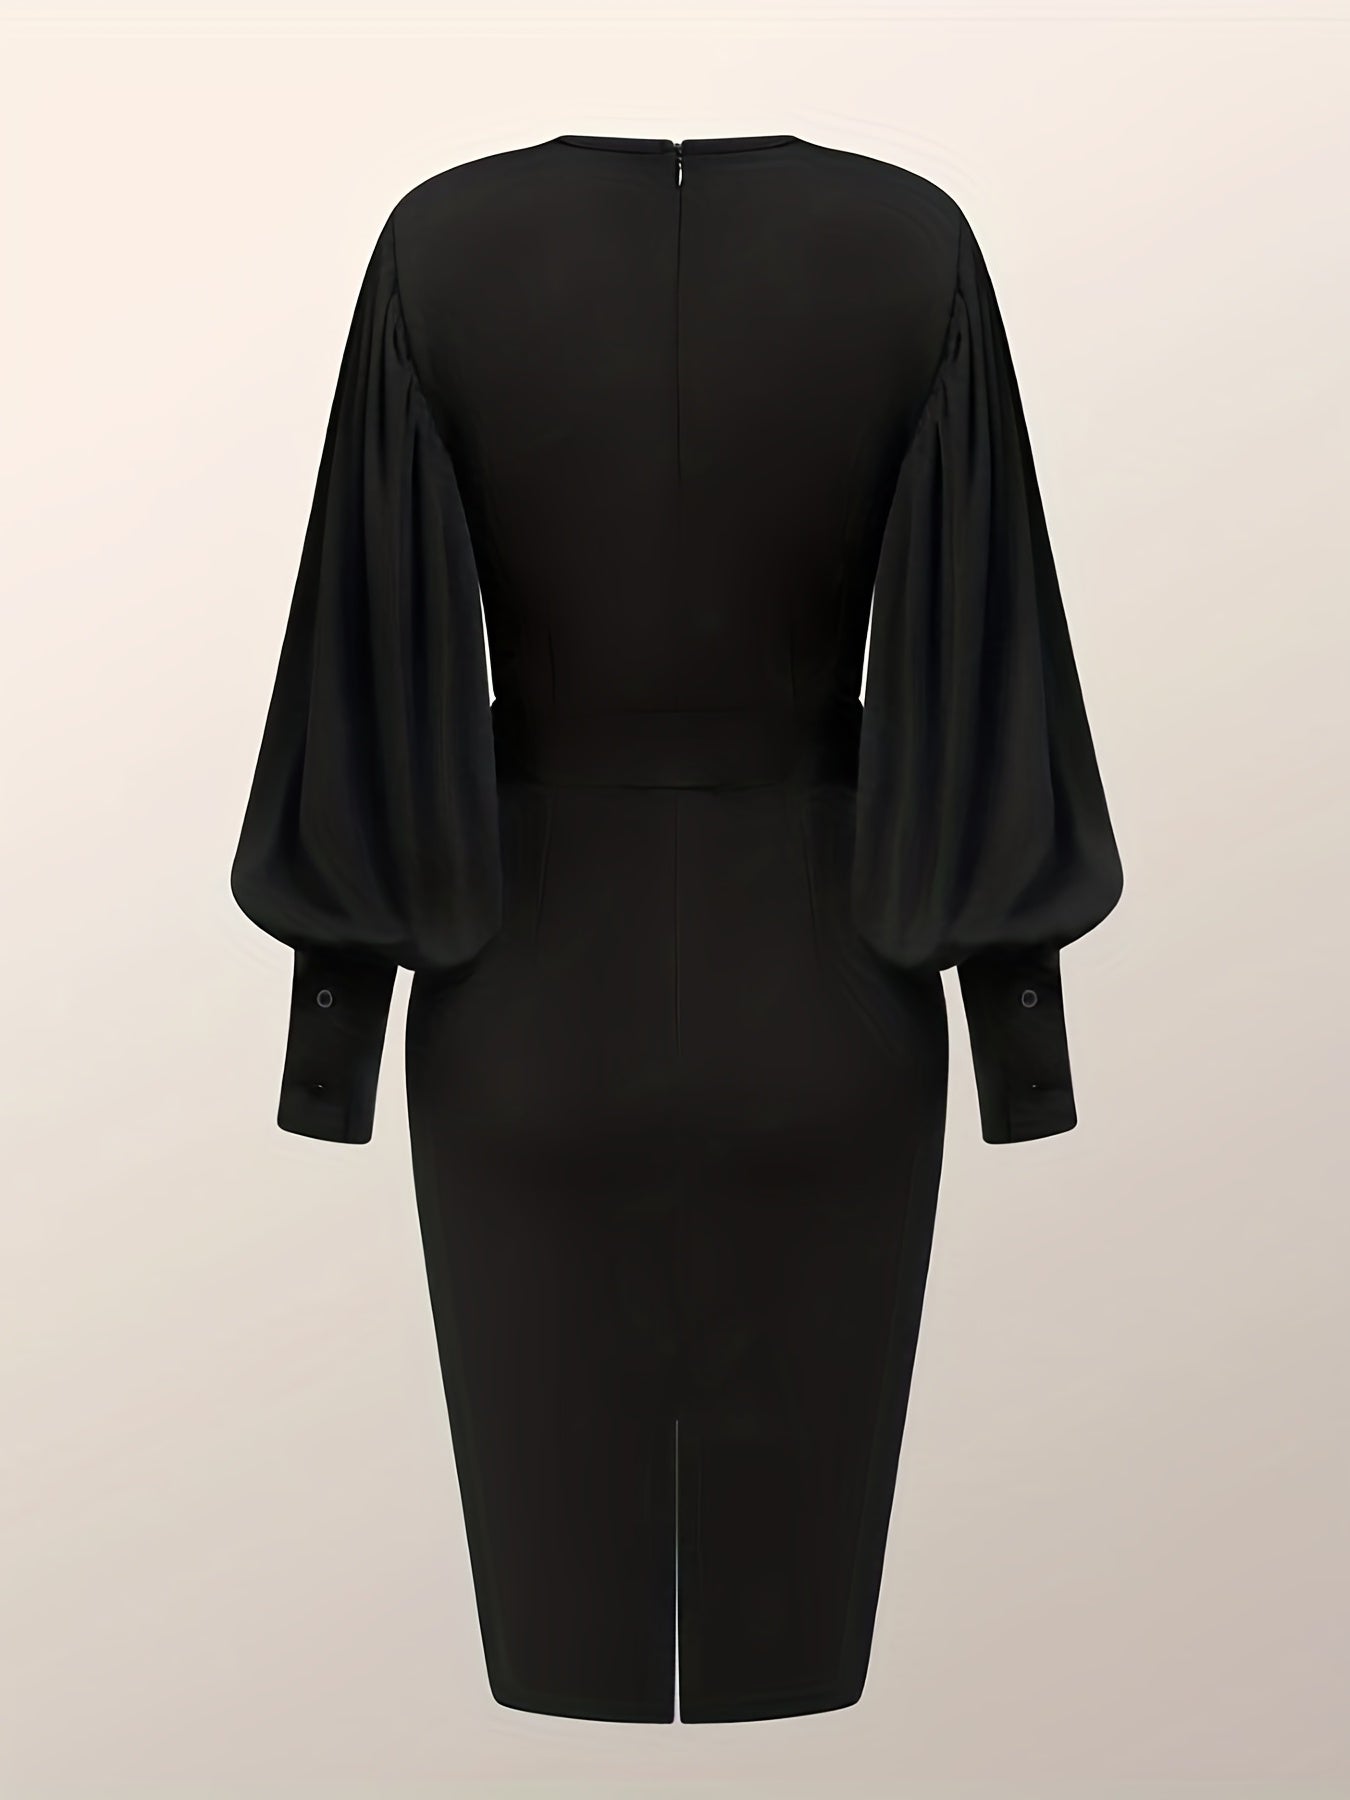 vlovelaw  Split Lantern Long Sleeve Dress, Elegant Crew Neck Solid Dress, Women's Clothing